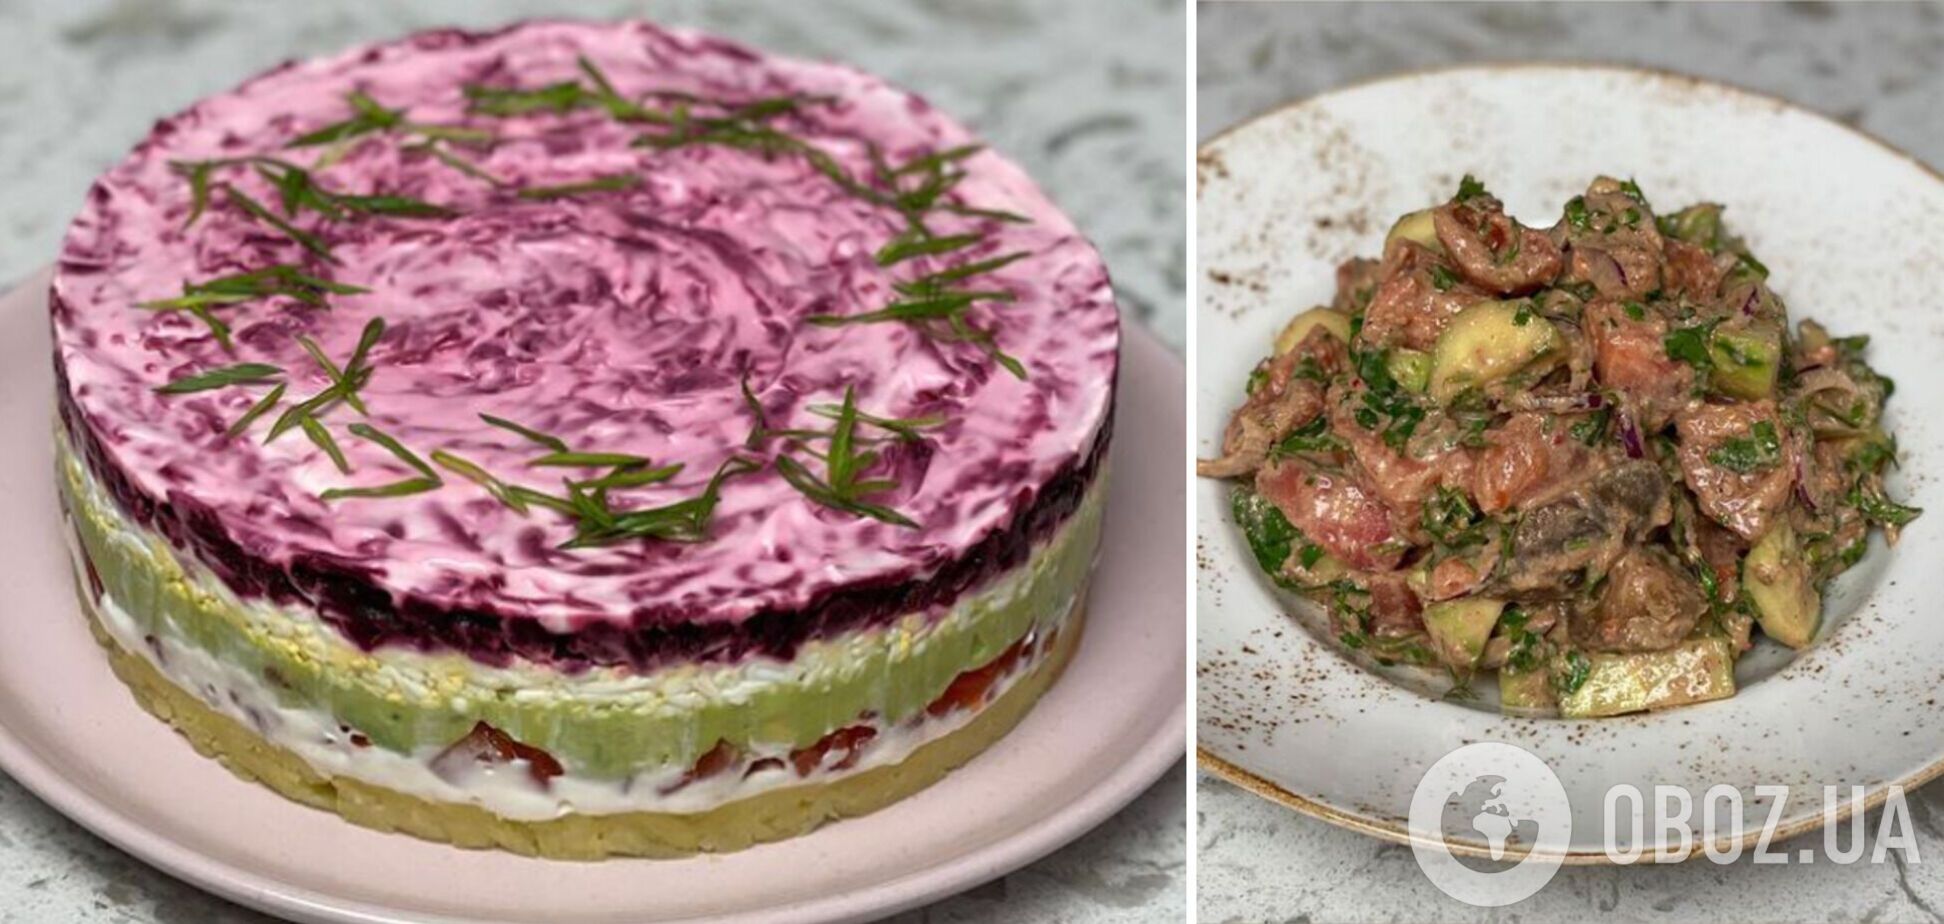 'Шуба' з червоною рибою та 'Олів'є' з язиком: найкращі новорічні салати